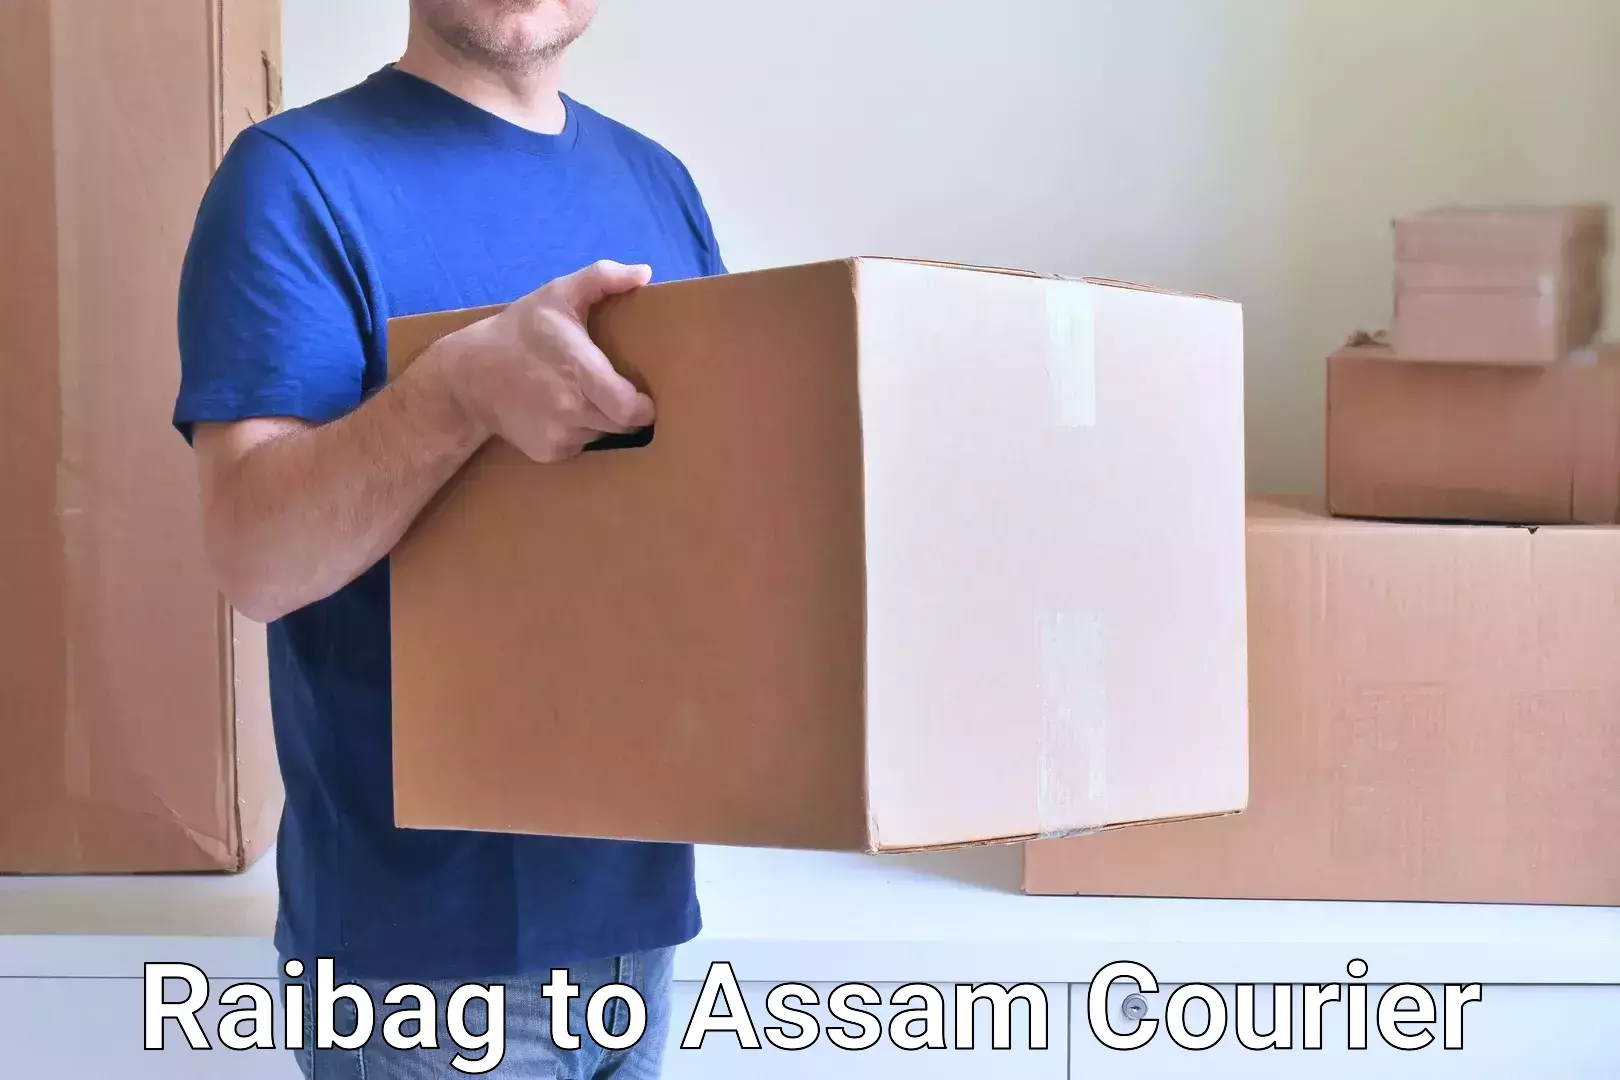 User-friendly courier app Raibag to Assam